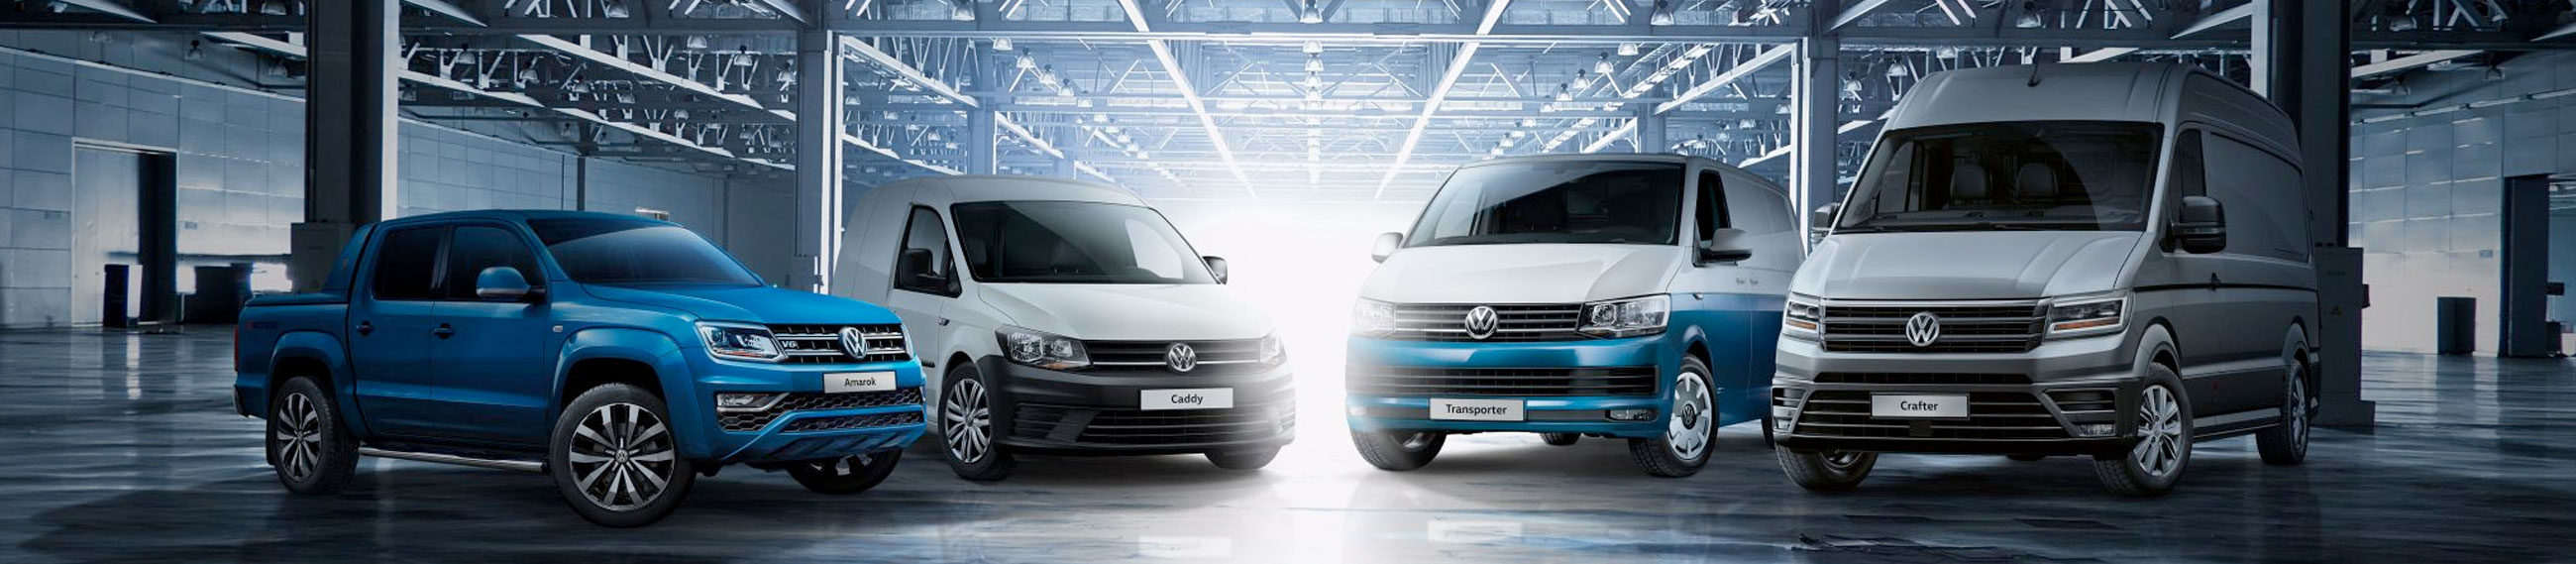 VW bedrijfswagen verkopen